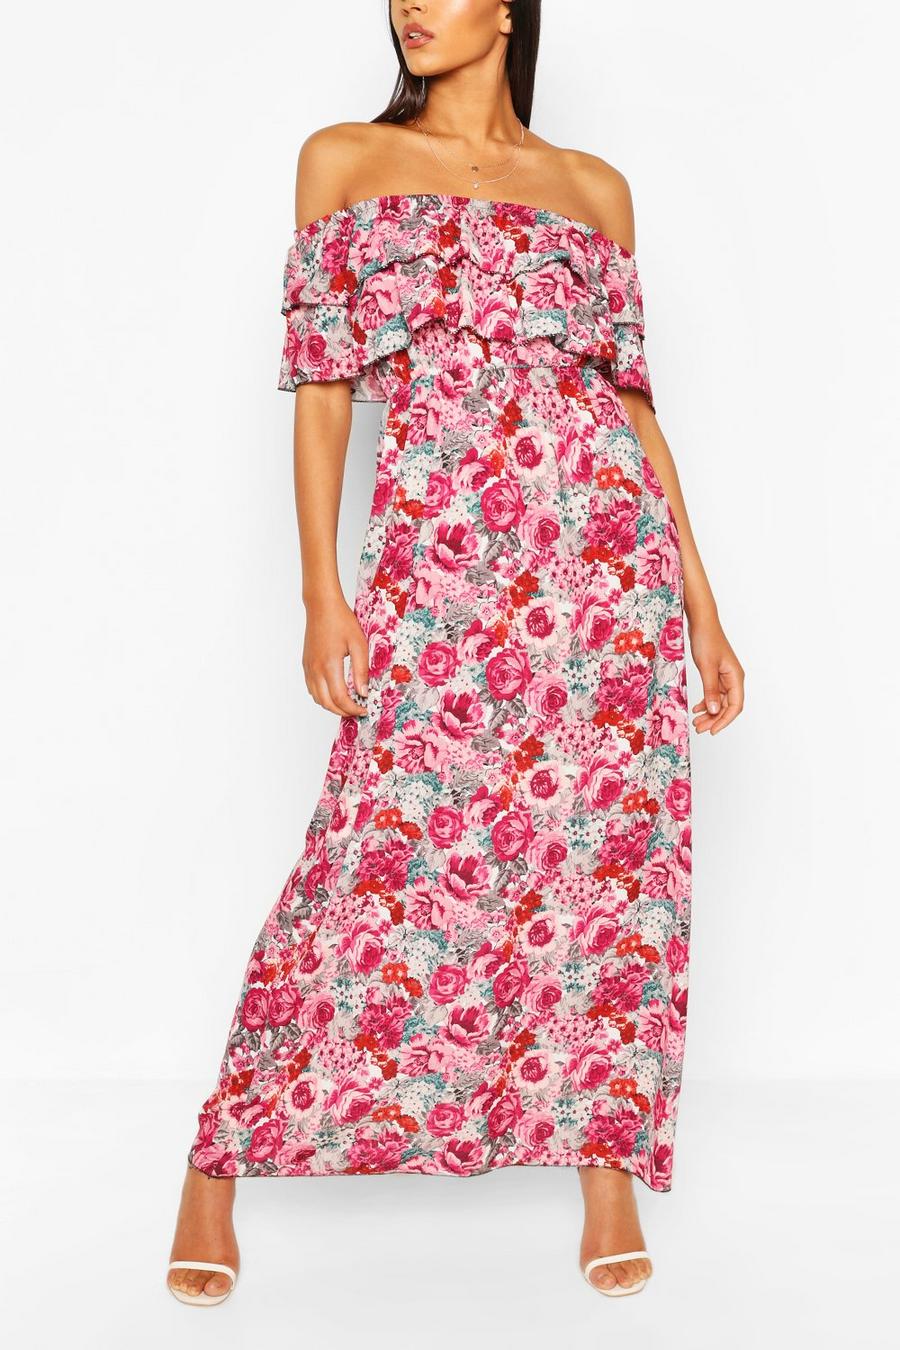 שמלת מקסי דו-שכבתית עם כתפיים חשופות עם הדפס ורדים image number 1